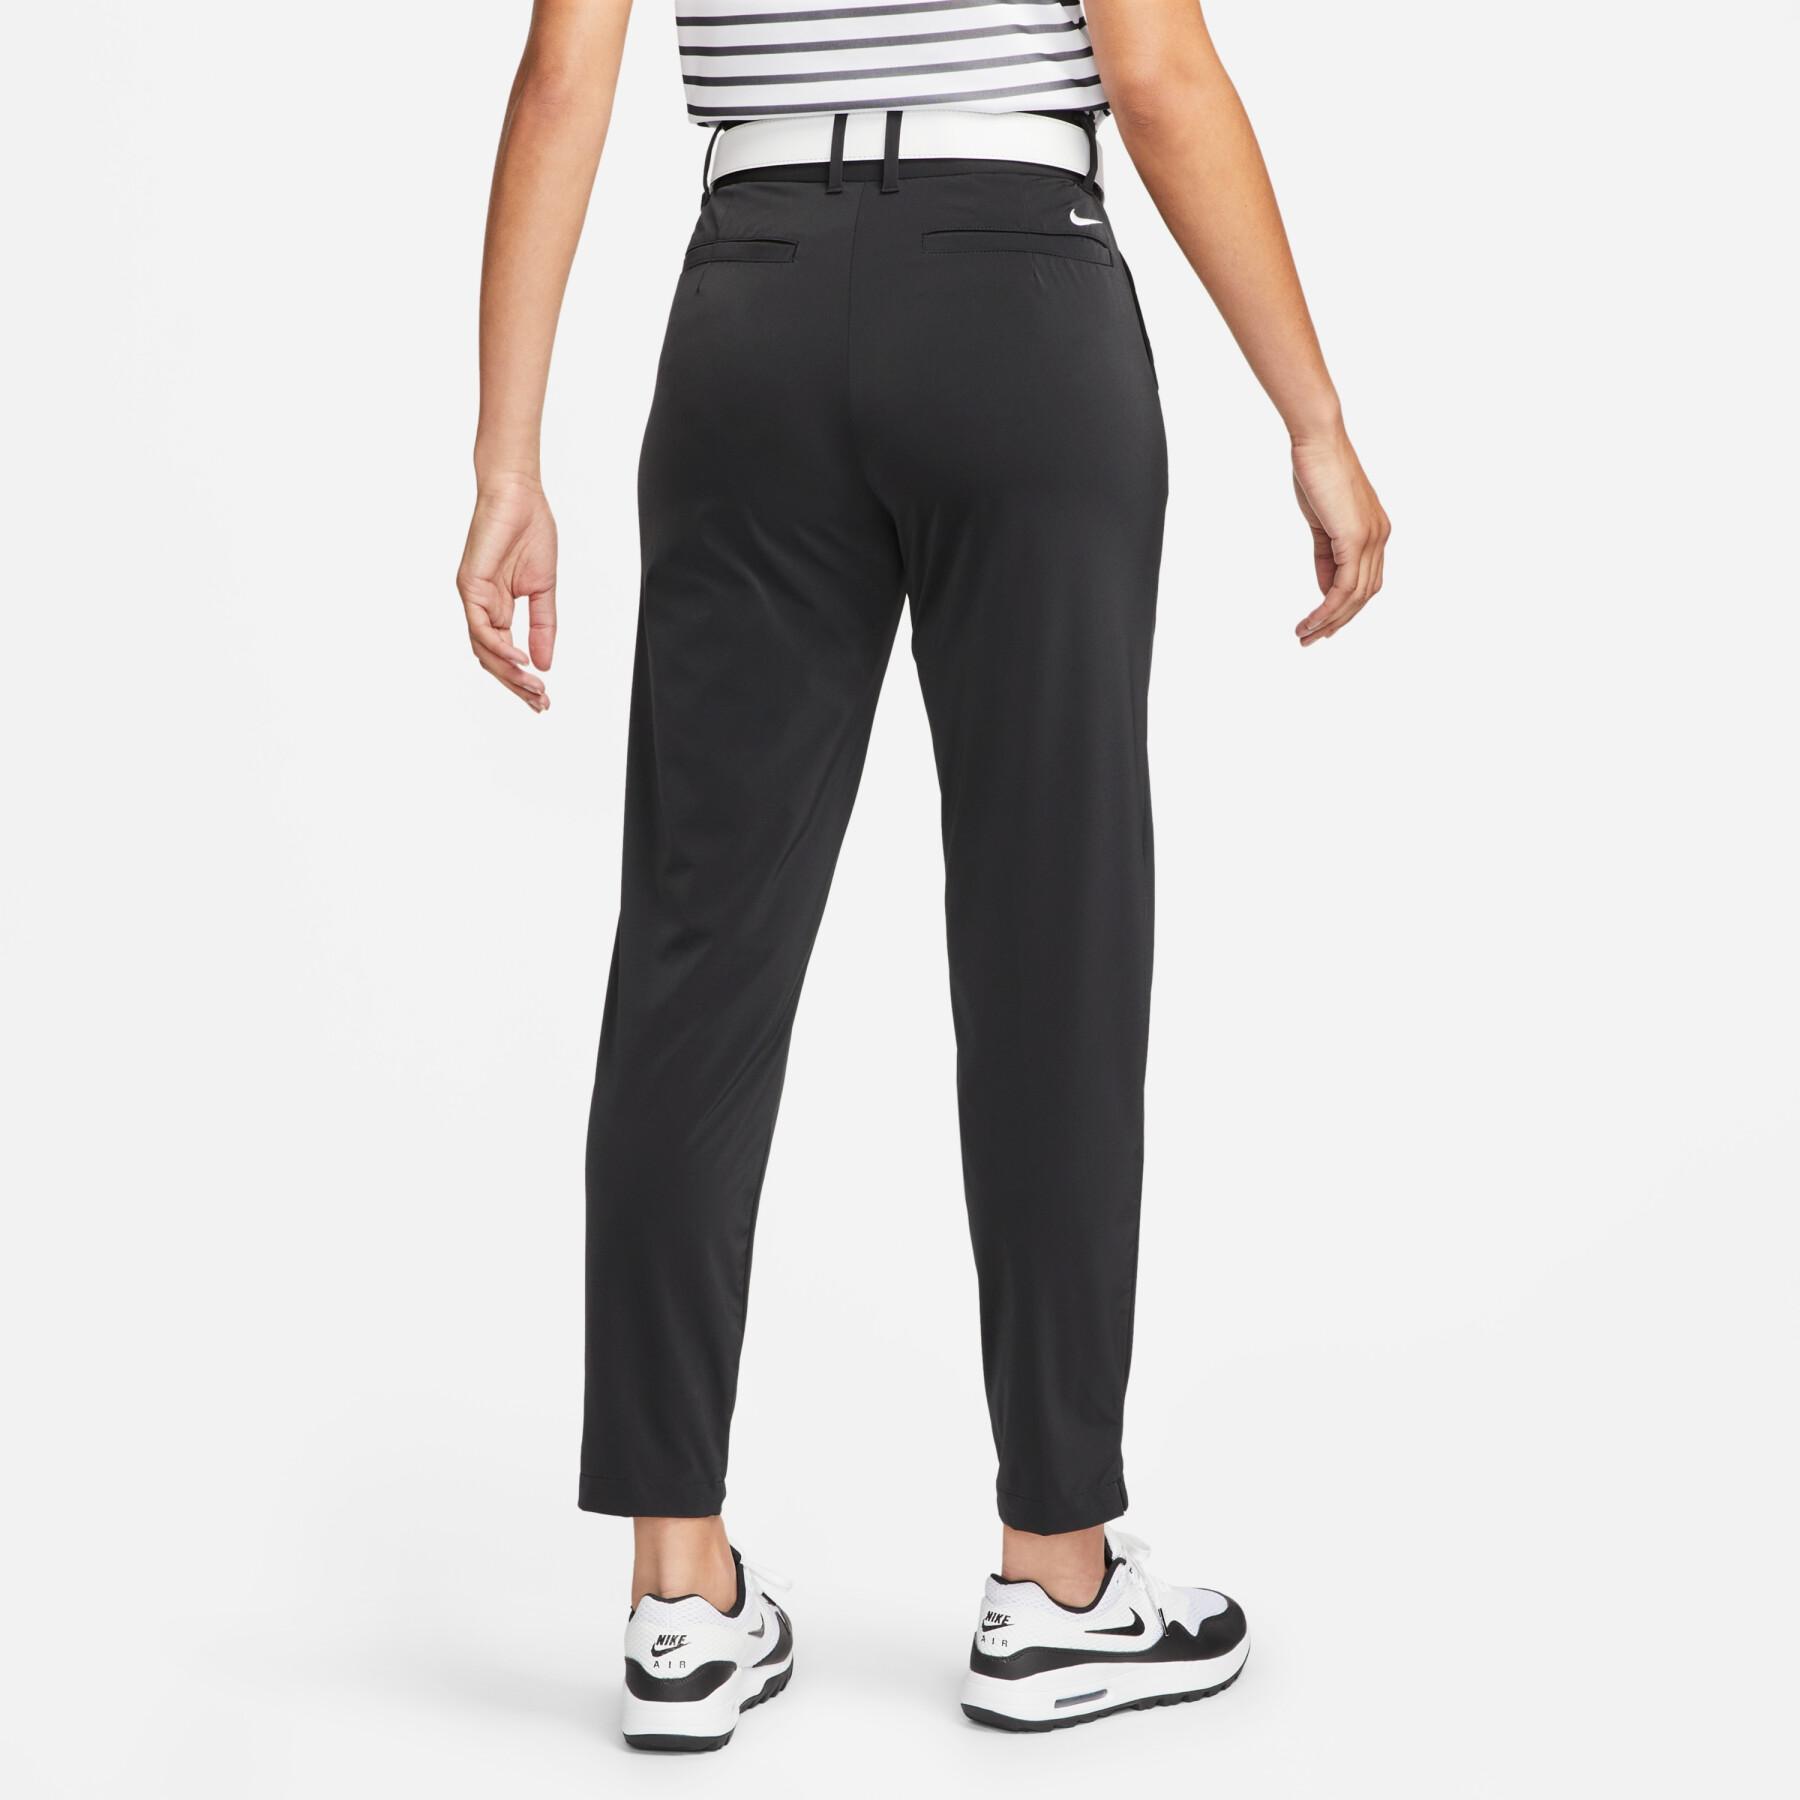 Women's jogging suit Nike Dri-FIT Tour